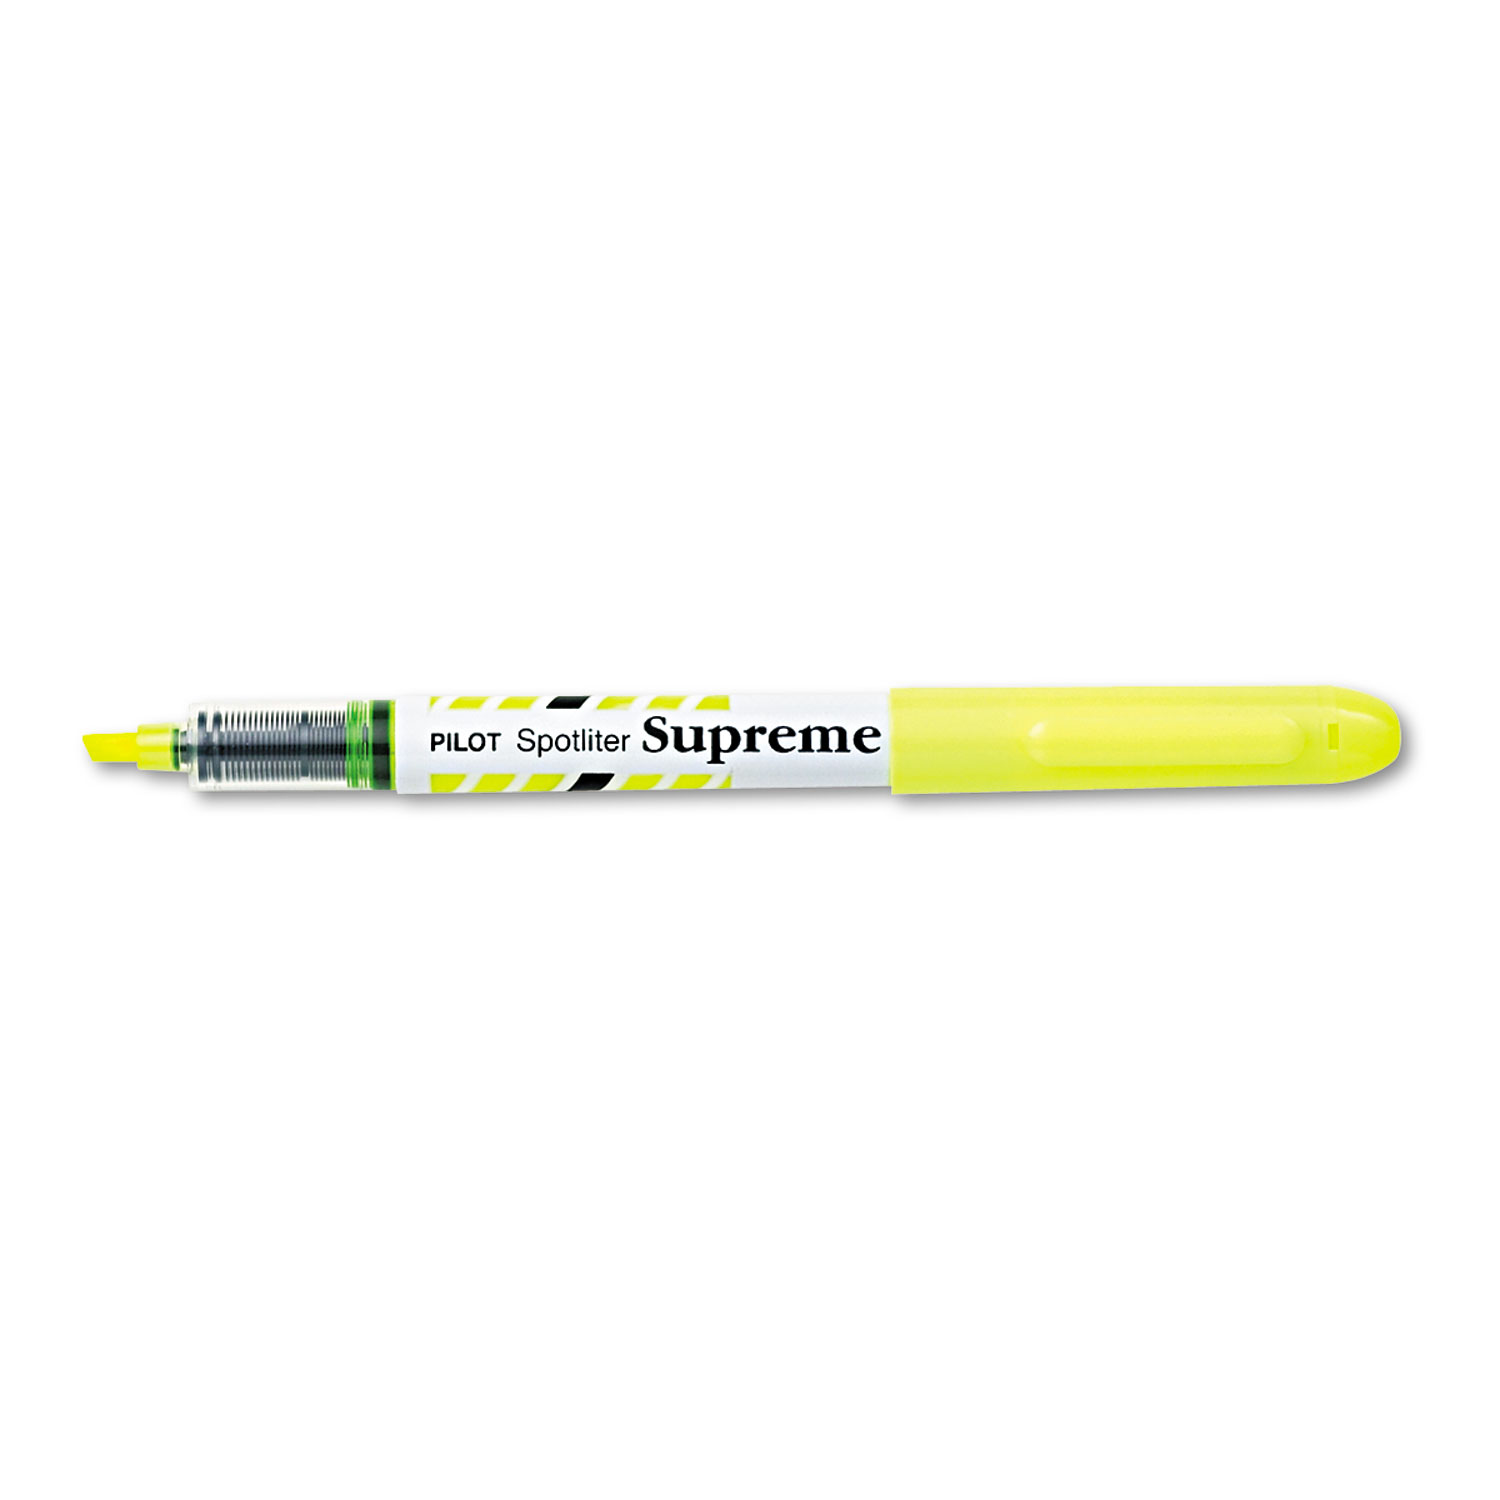  Pilot 16008 Spotliter Supreme Highlighter, Chisel Tip, Fluorescent Yellow, Dozen (PIL16008) 